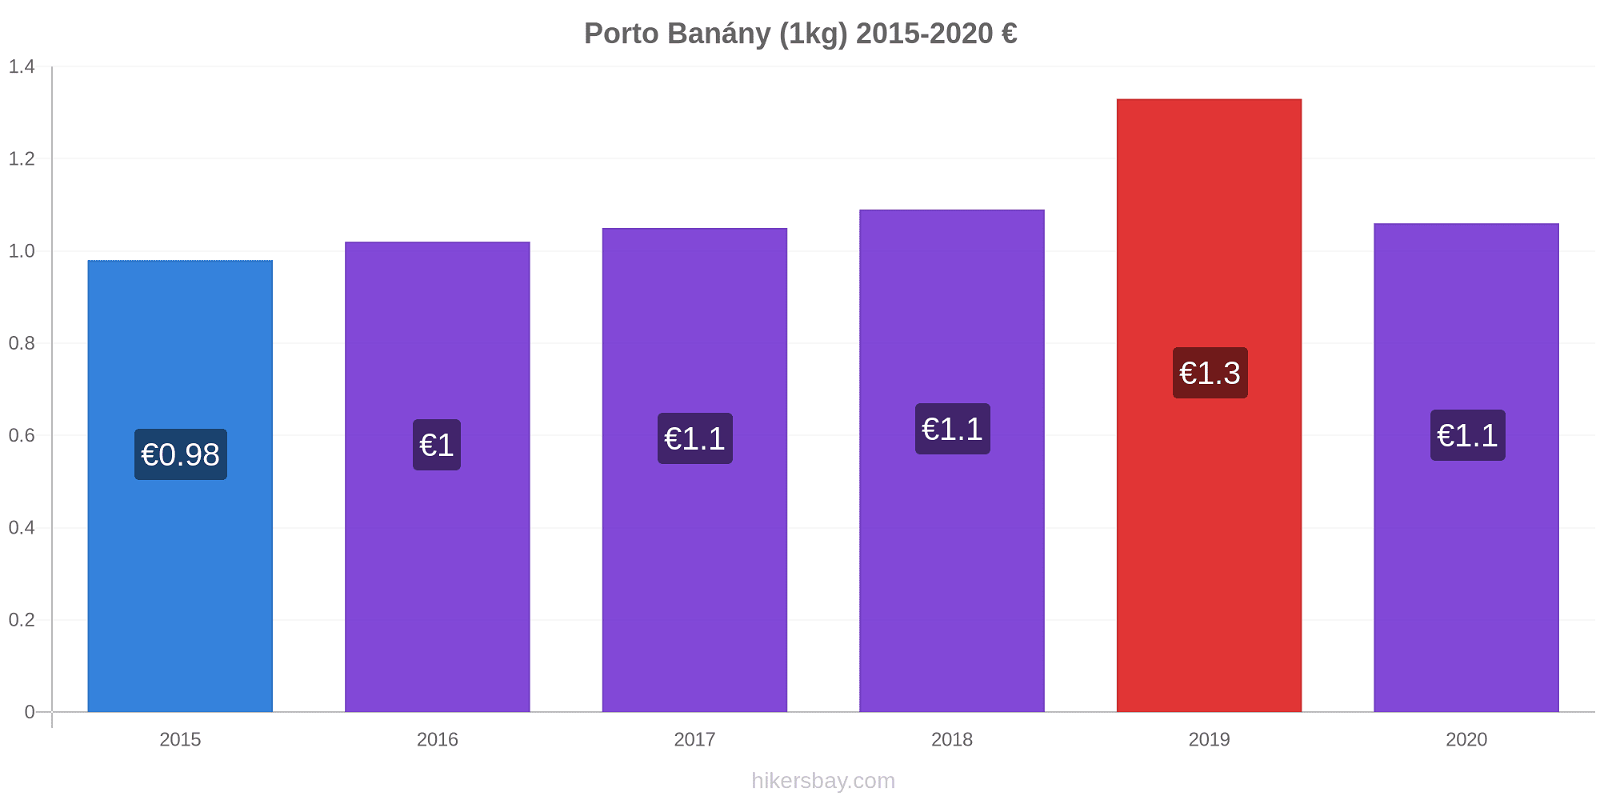 Porto změny cen Banány (1kg) hikersbay.com